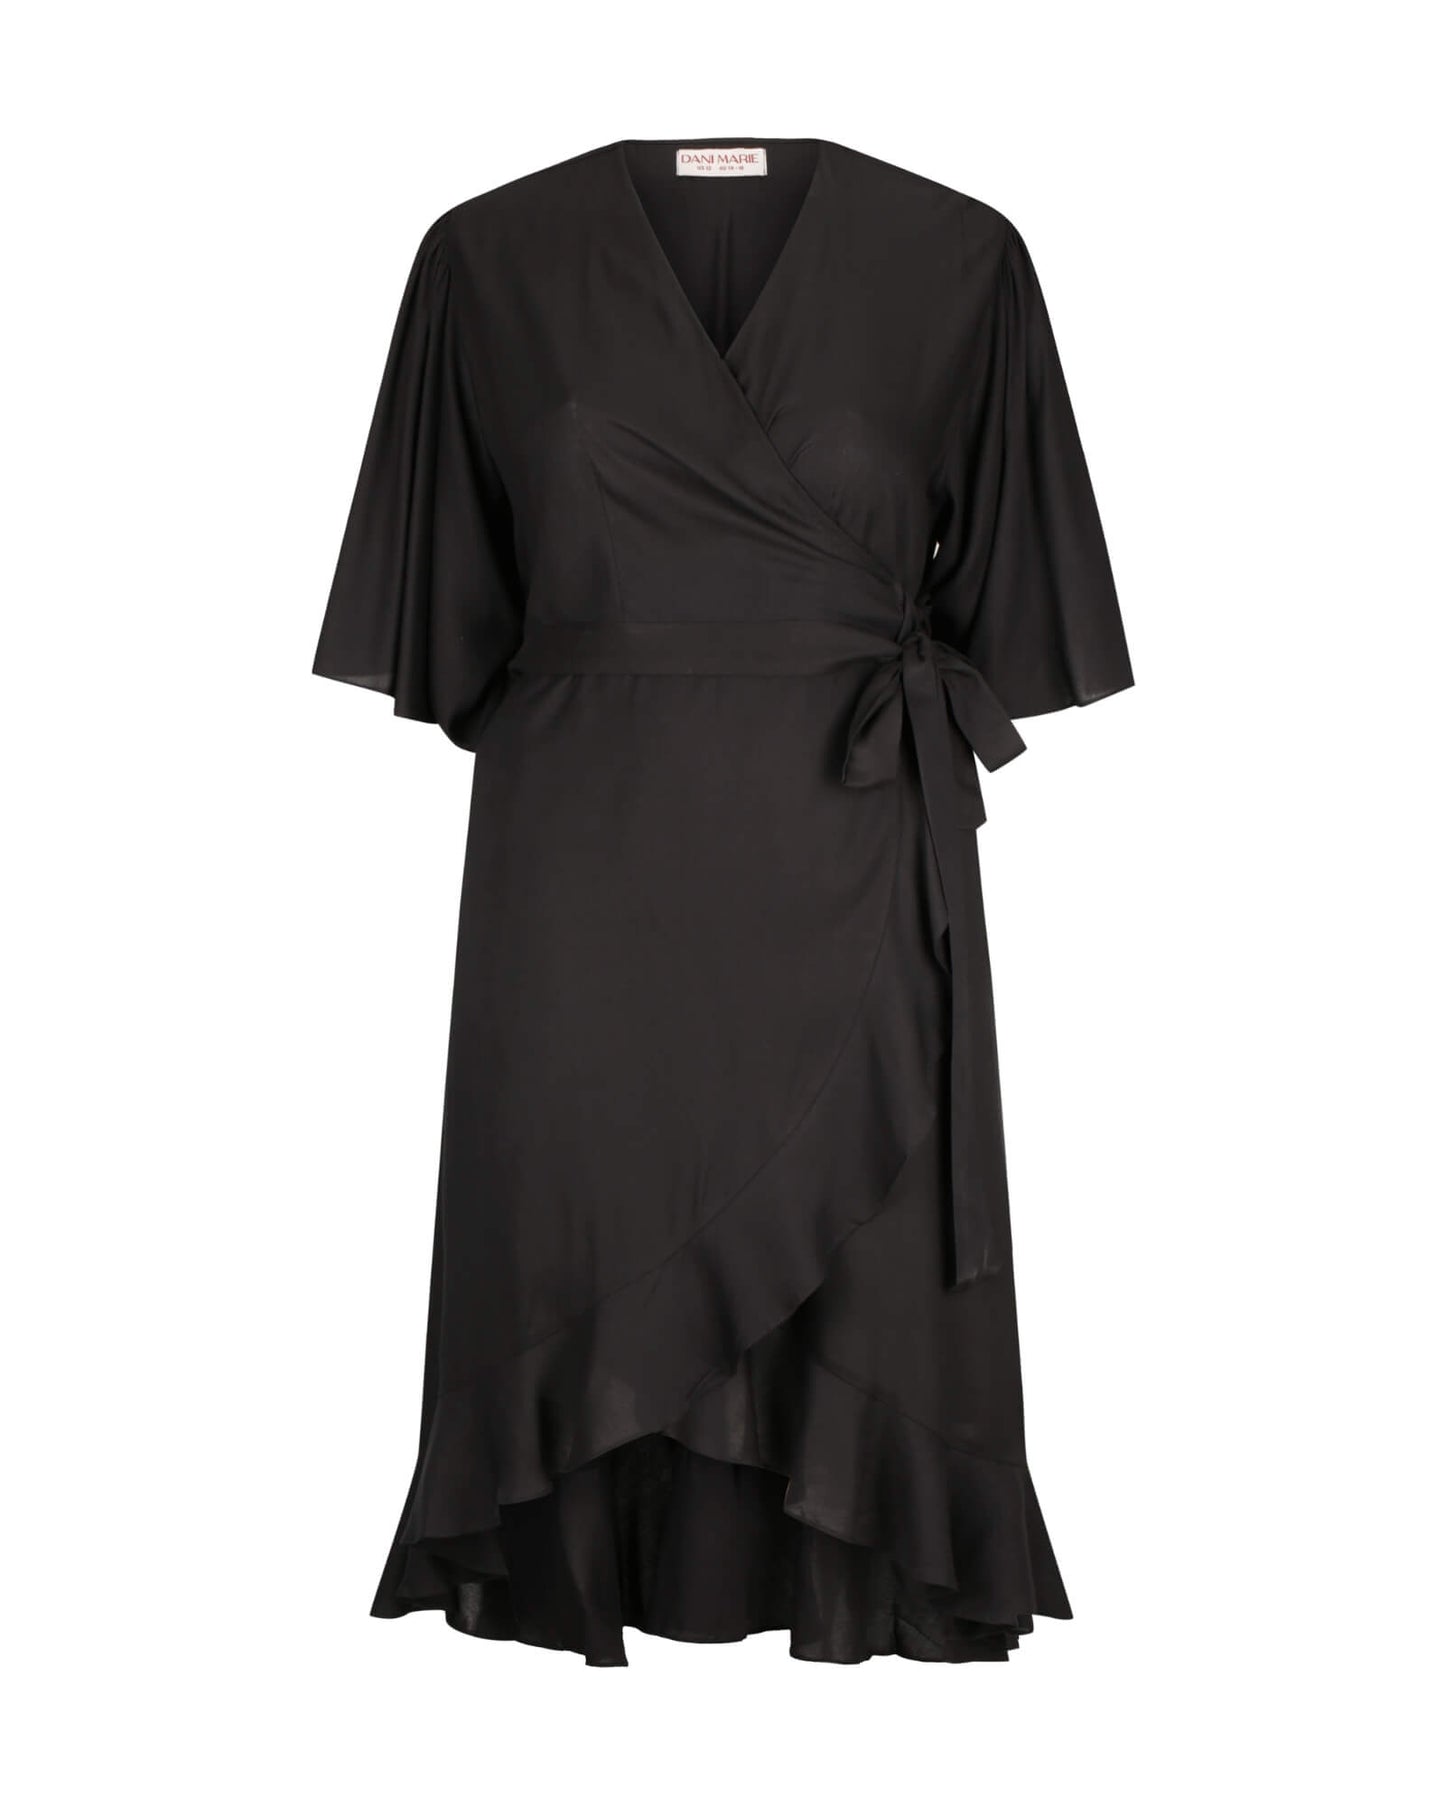 Gabrielle Short Sleeve Wrap Dress in Black